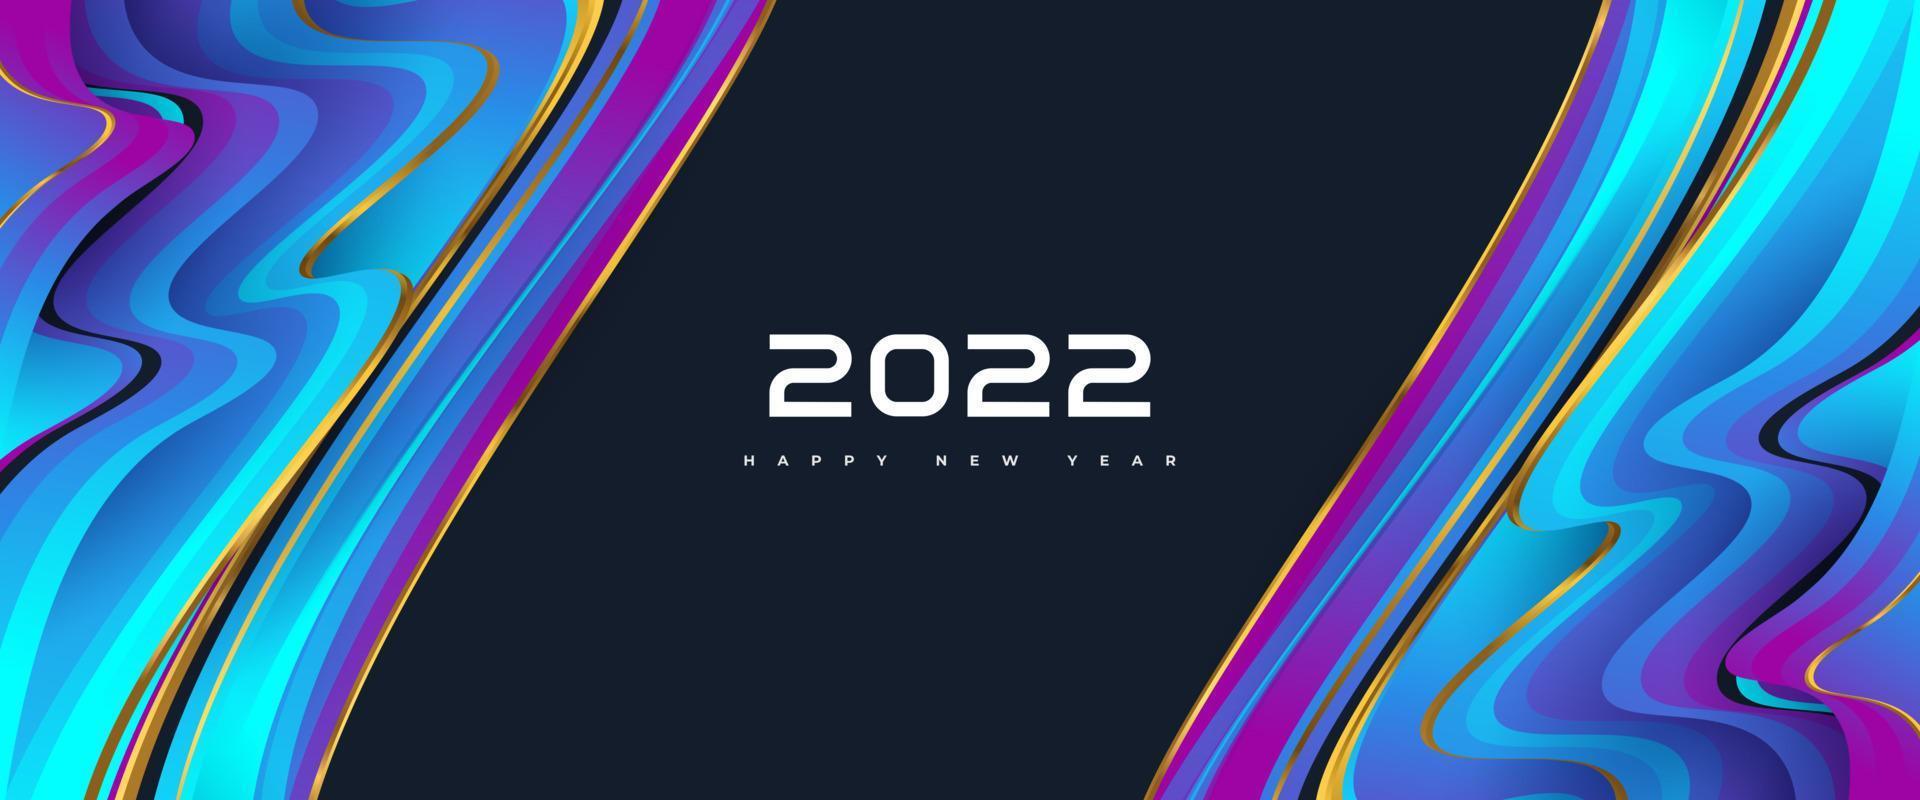 felice anno nuovo 2022 banner o poster con sfondo colorato e fluido. modello di progettazione per la celebrazione del nuovo anno per volantini, poster, brochure, biglietti, striscioni o cartoline vettore